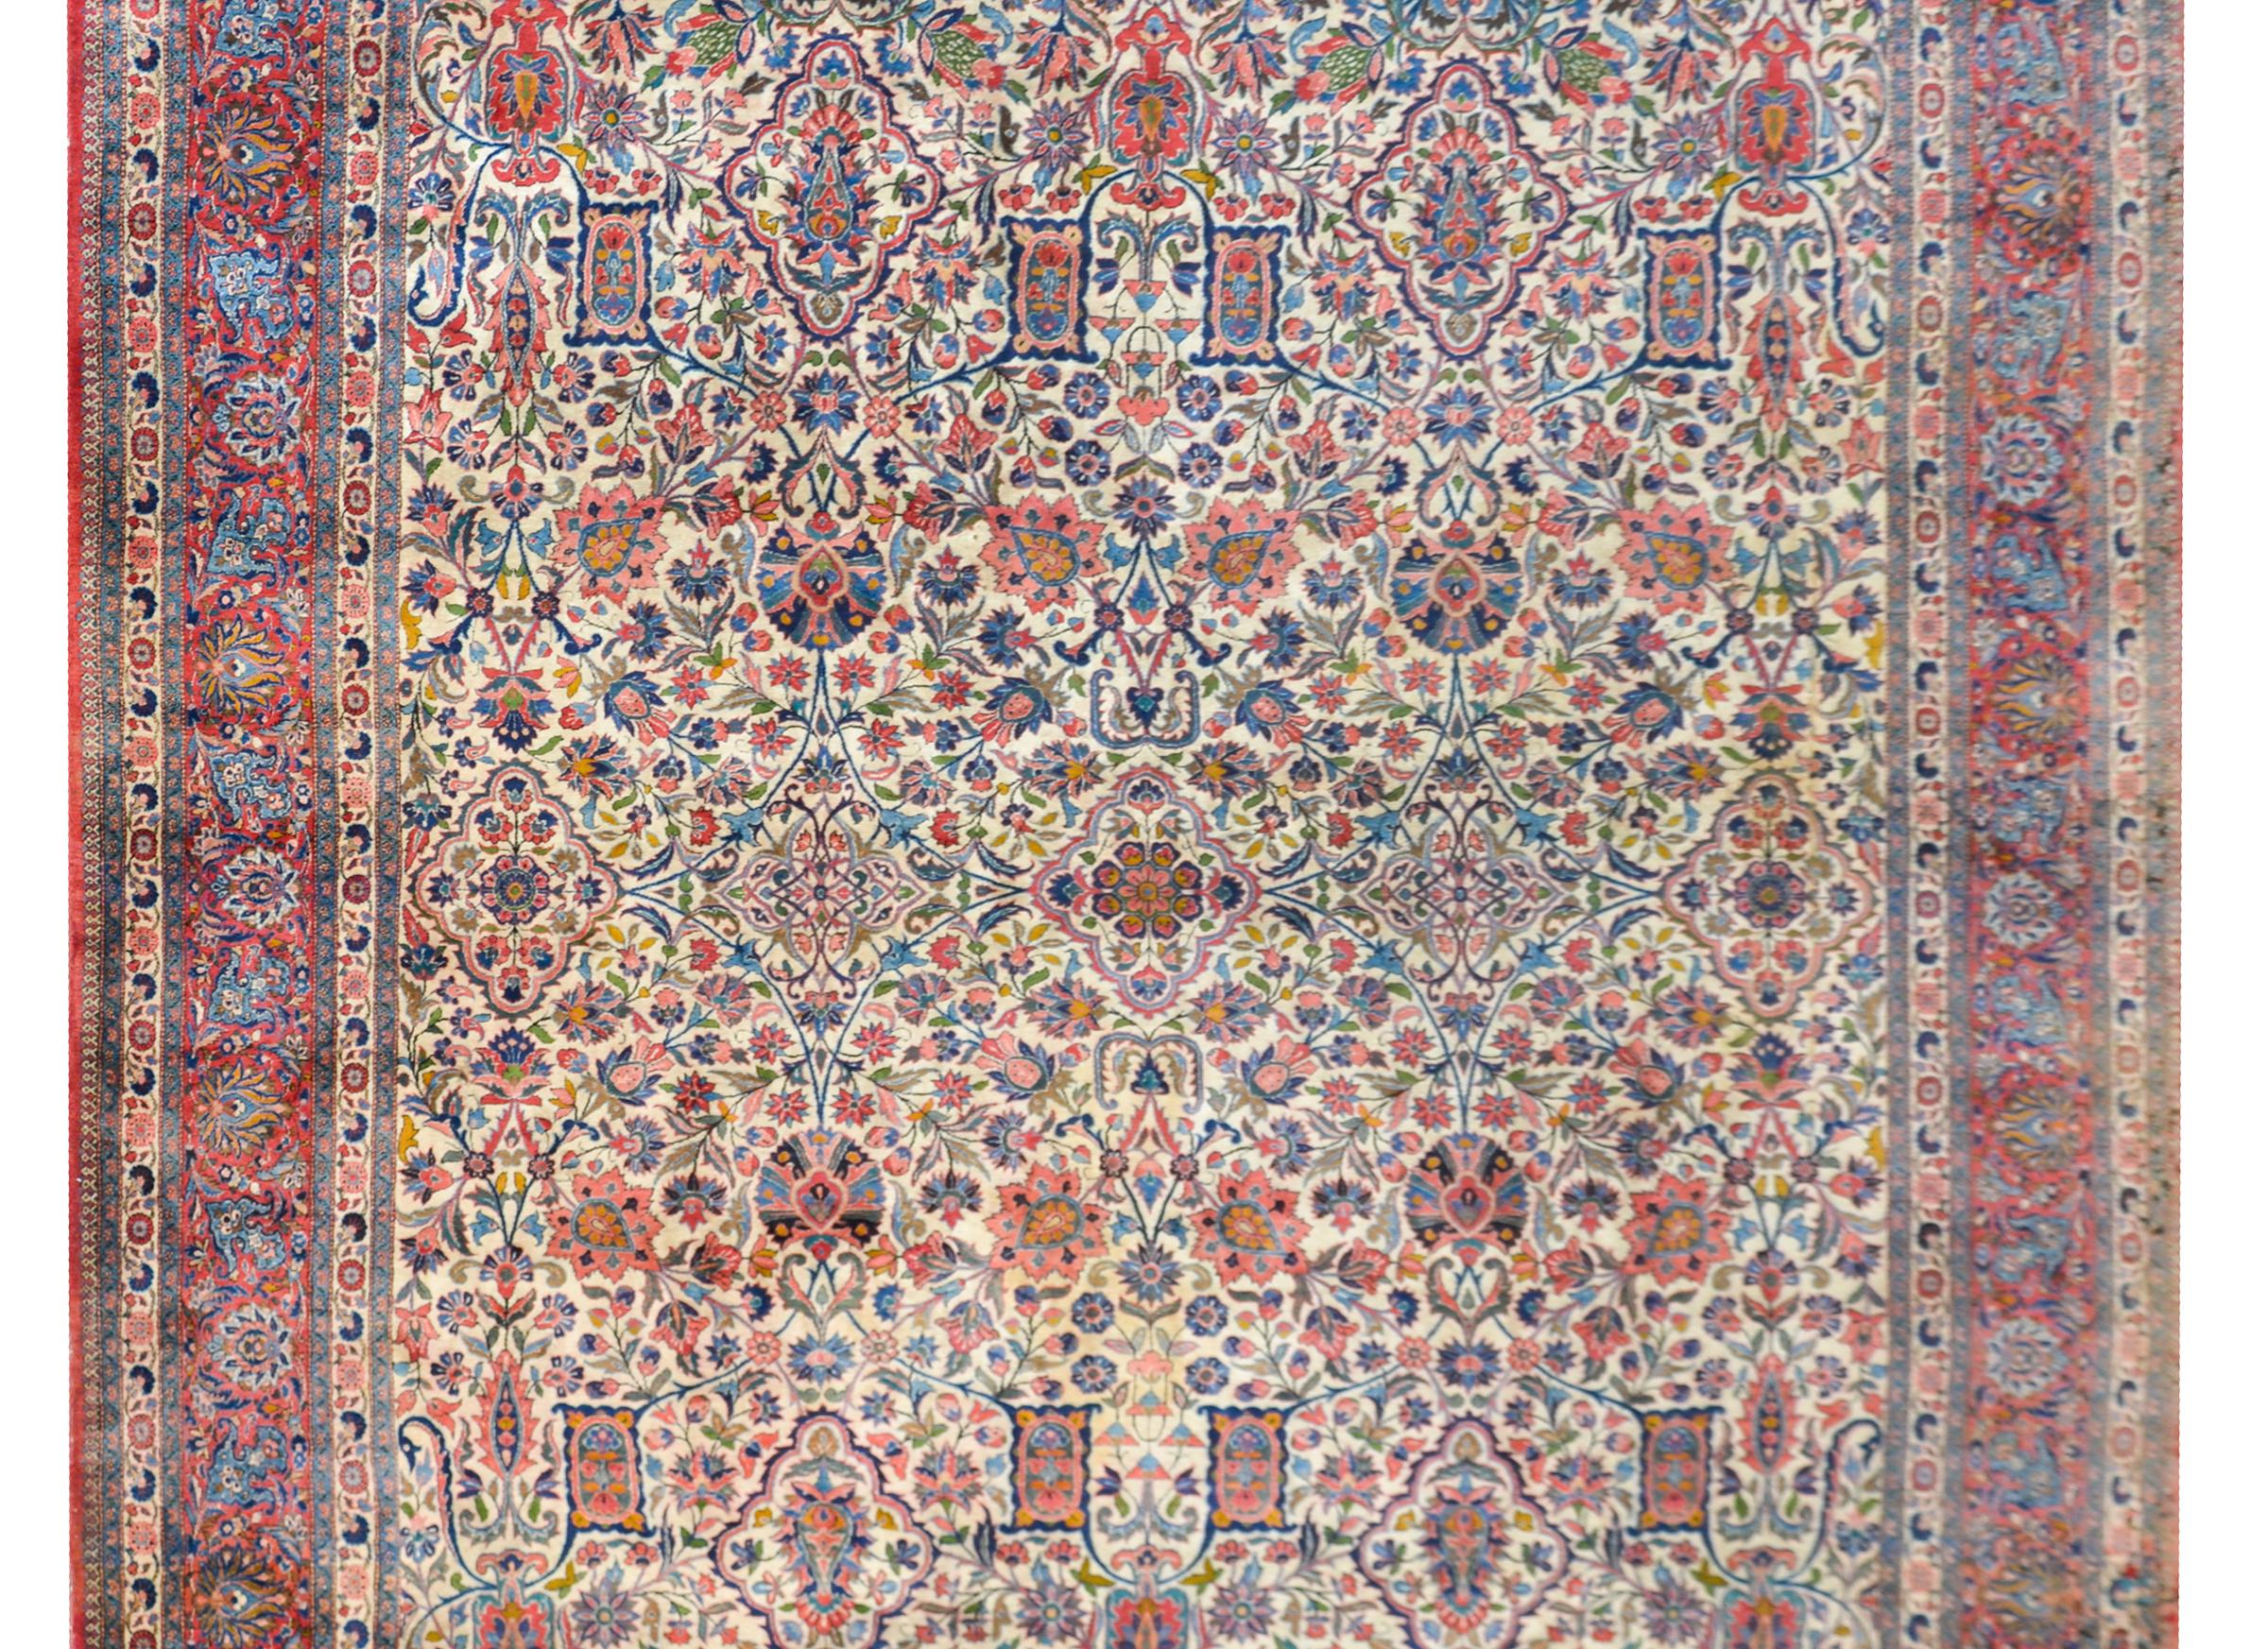 Eine wunderbare frühen 20. Jahrhundert persischen Kashan Teppich mit einem all-over Spalier Blumen und Reben Muster gewebt in unzähligen Farben, darunter Karminrot, Indigos, Grün, Gold und Rosa, vor einem cremefarbenen Hintergrund, und umgeben von